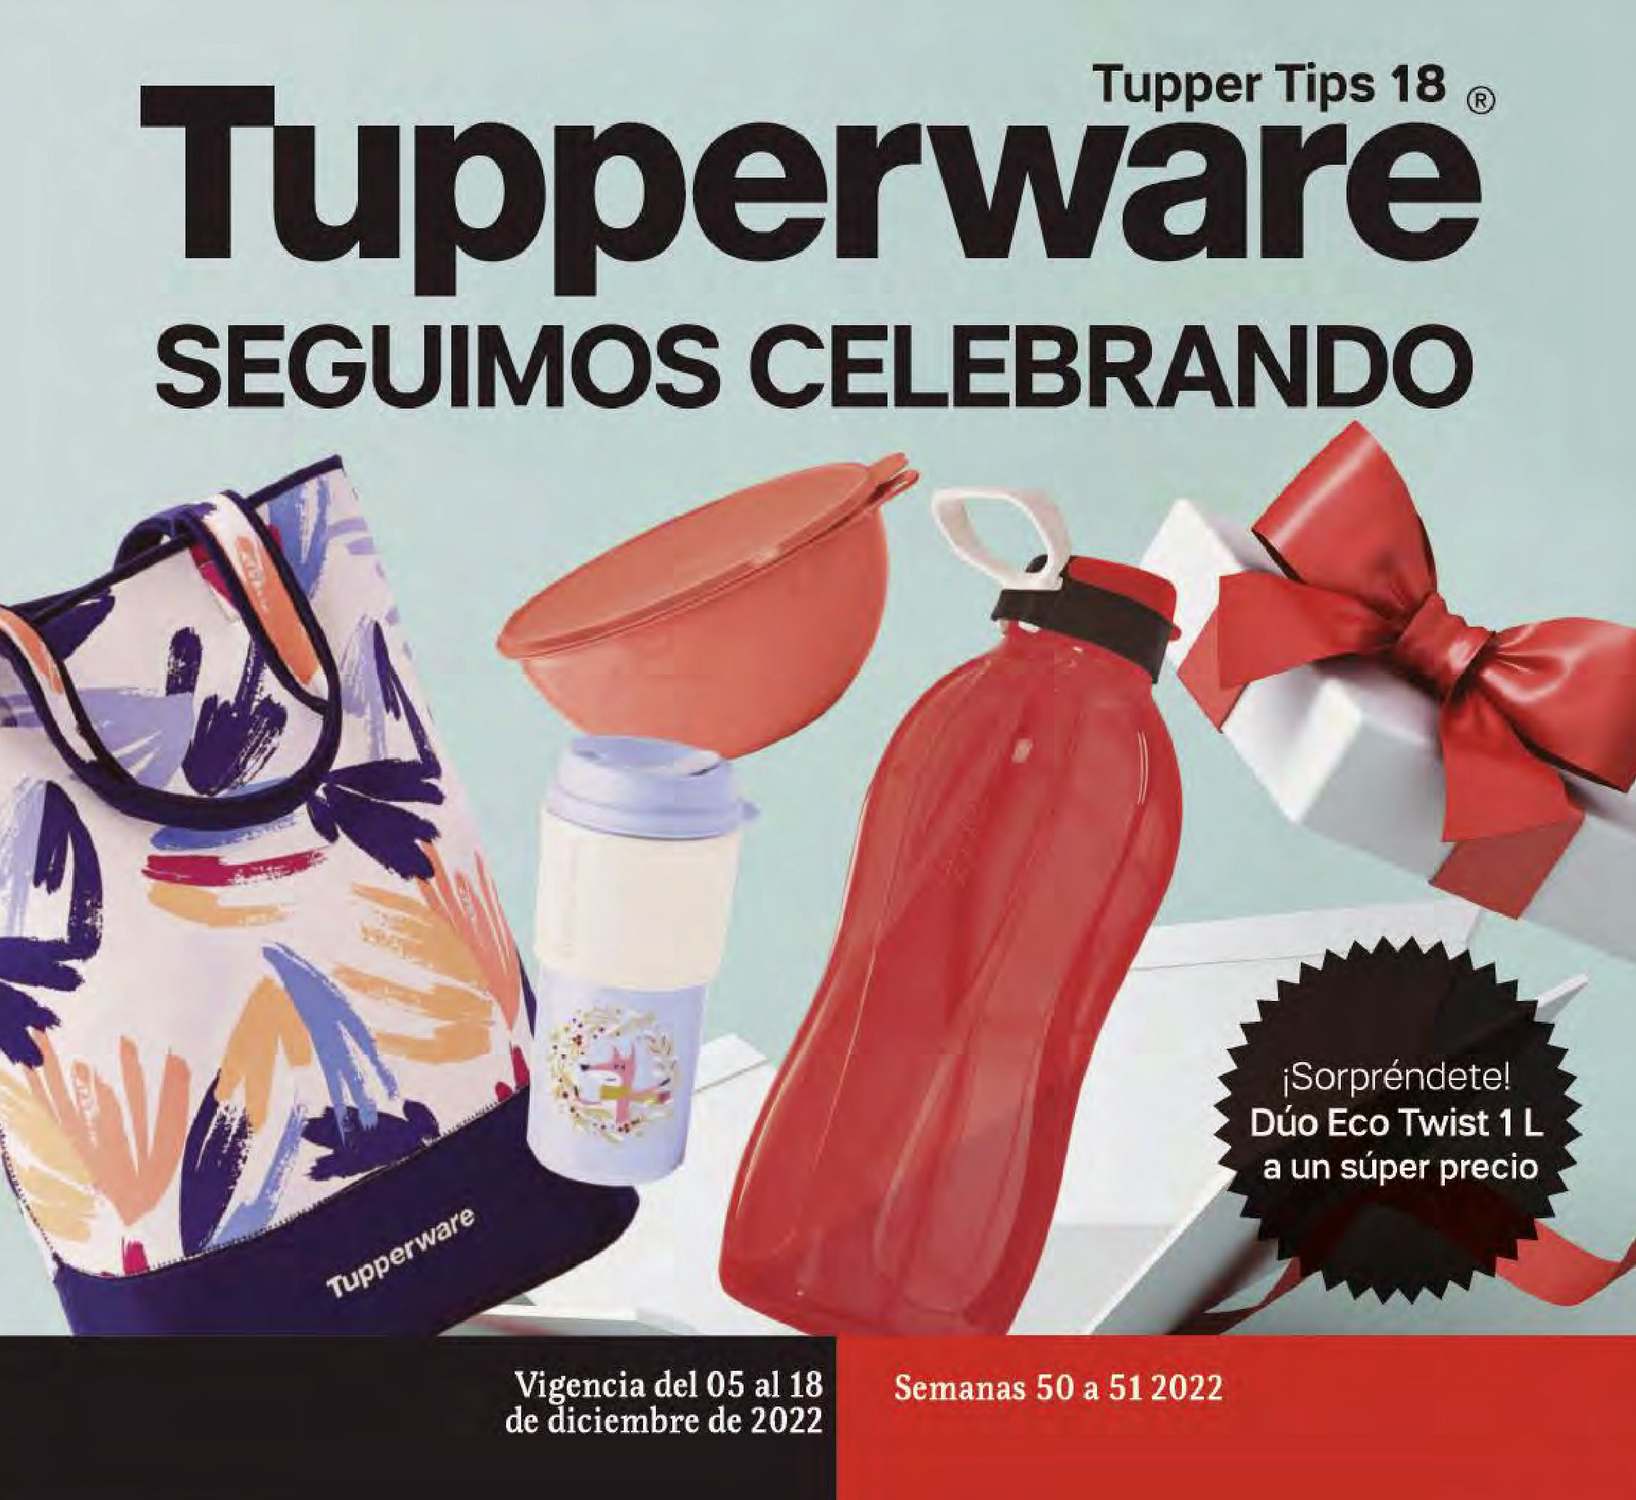 Catálogo Tupperware Tupper Tips 18 2022 México